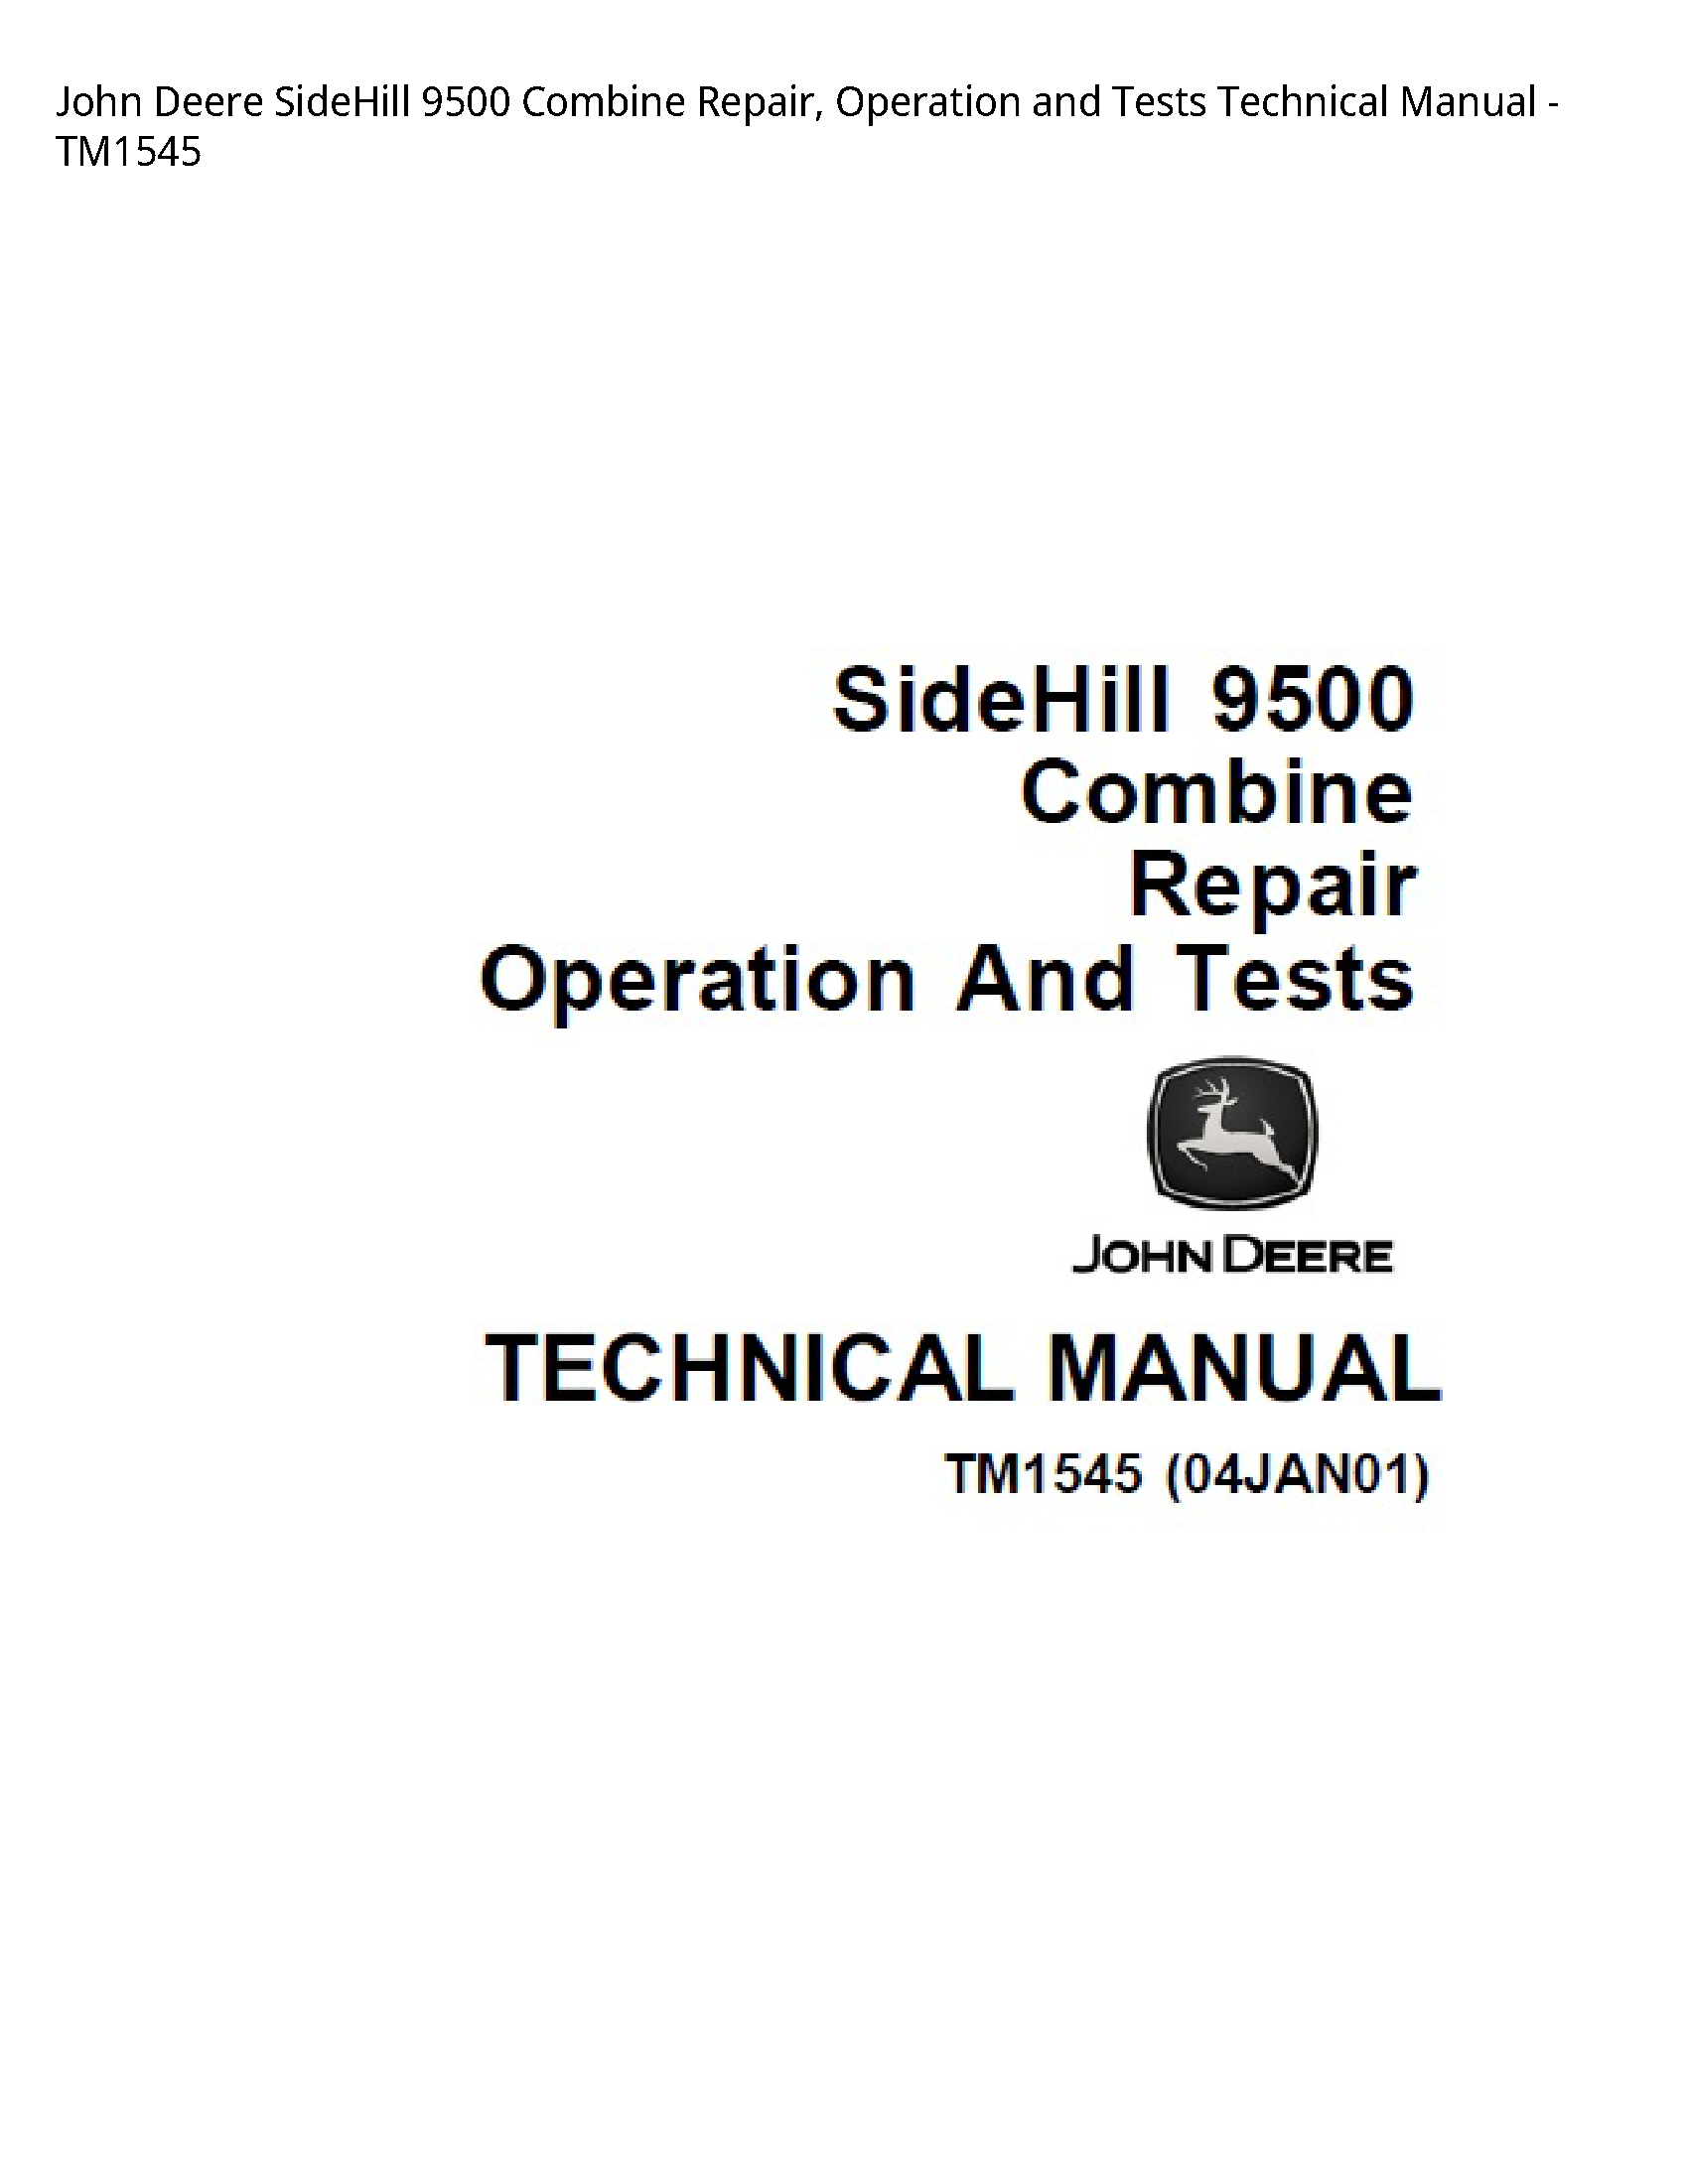 John Deere 9500 SideHill Combine Repair manual